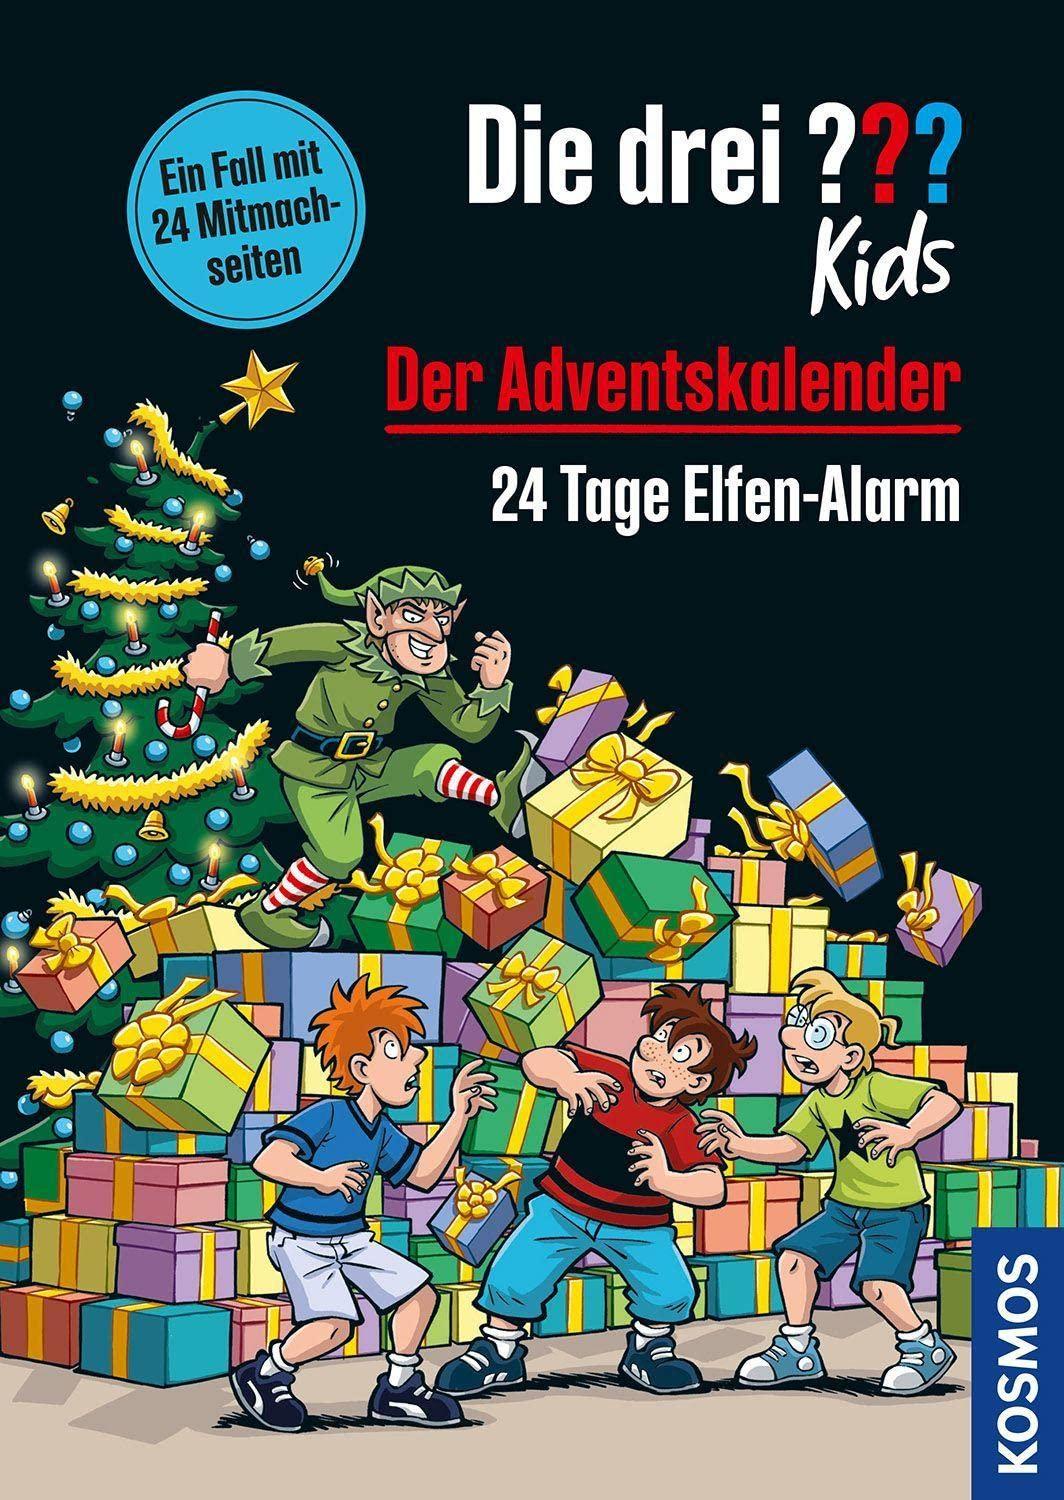 Die drei ''' kids - Adventskalenderbuch: 24 Tage Elfen-Alarm